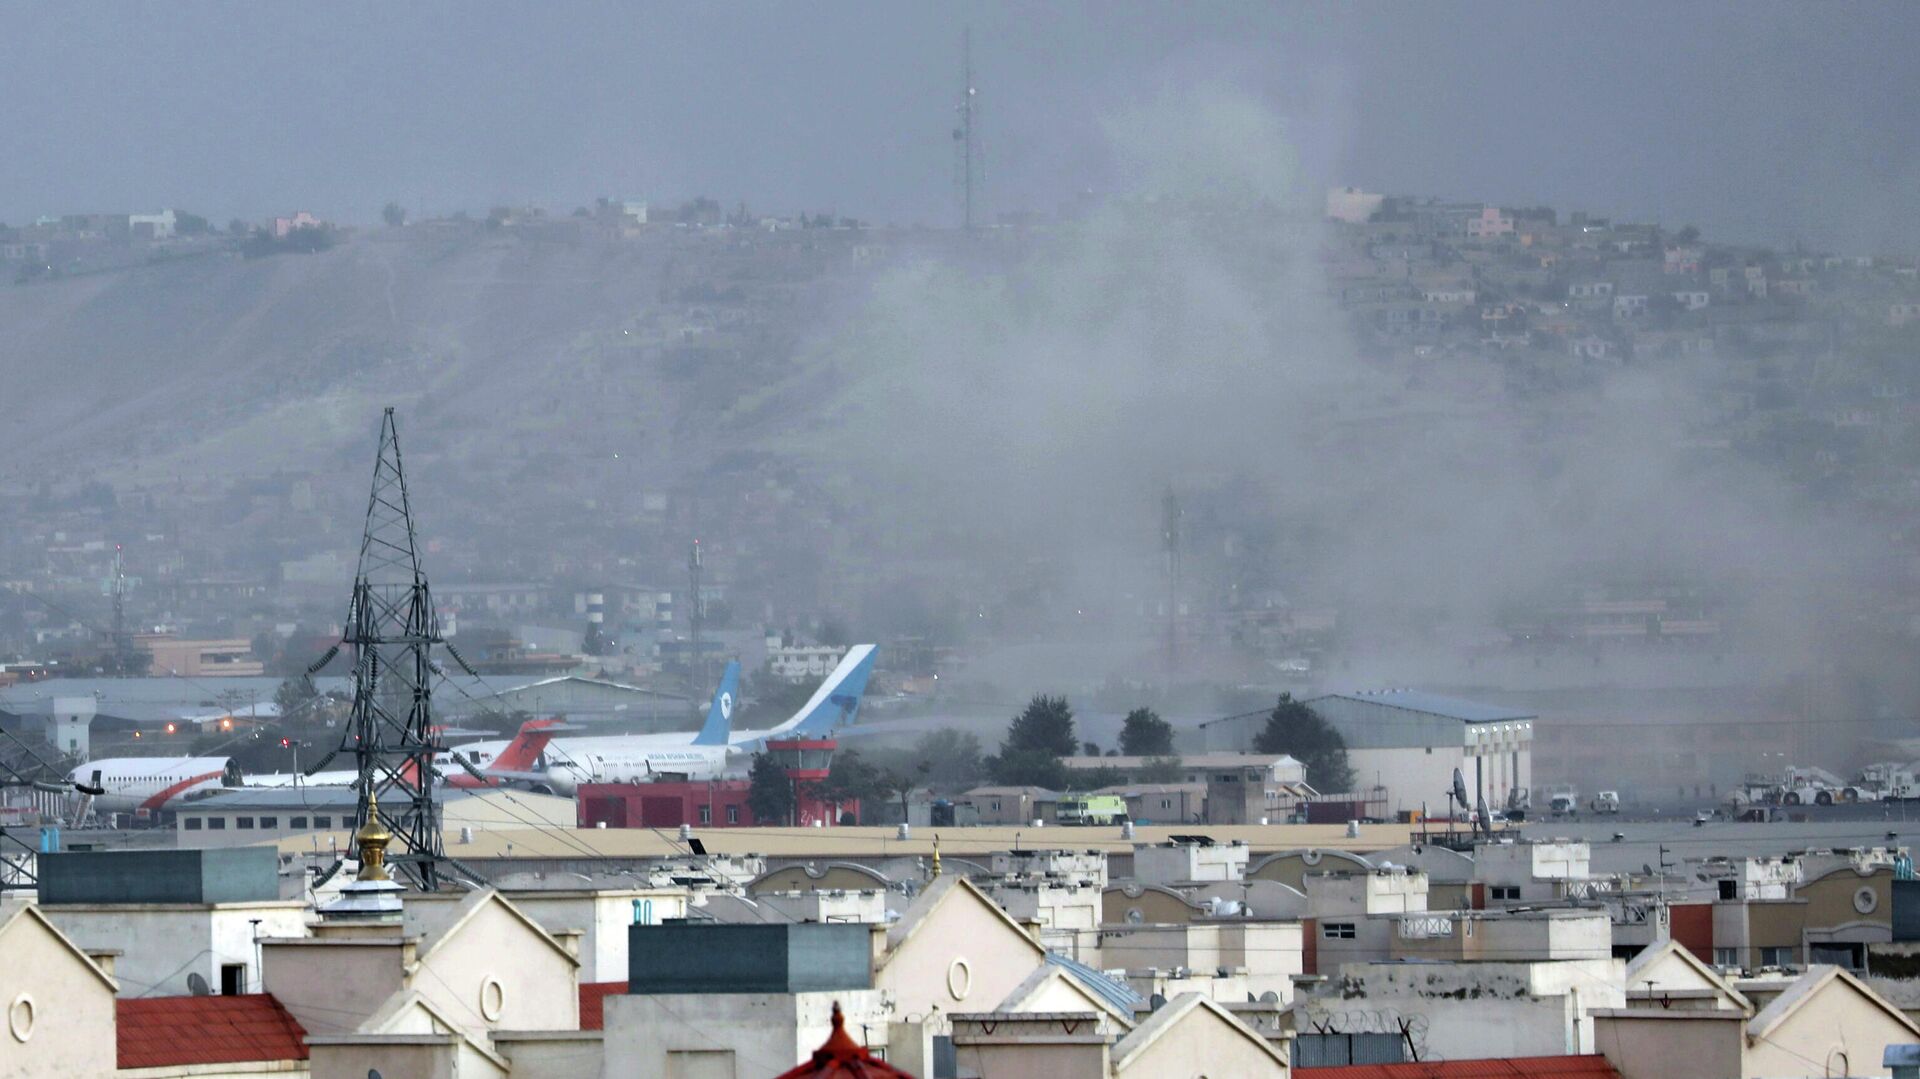  Около аэропорта в Кабуле прогремели три взрыва, Афганистан - РИА Новости, 1920, 30.08.2021